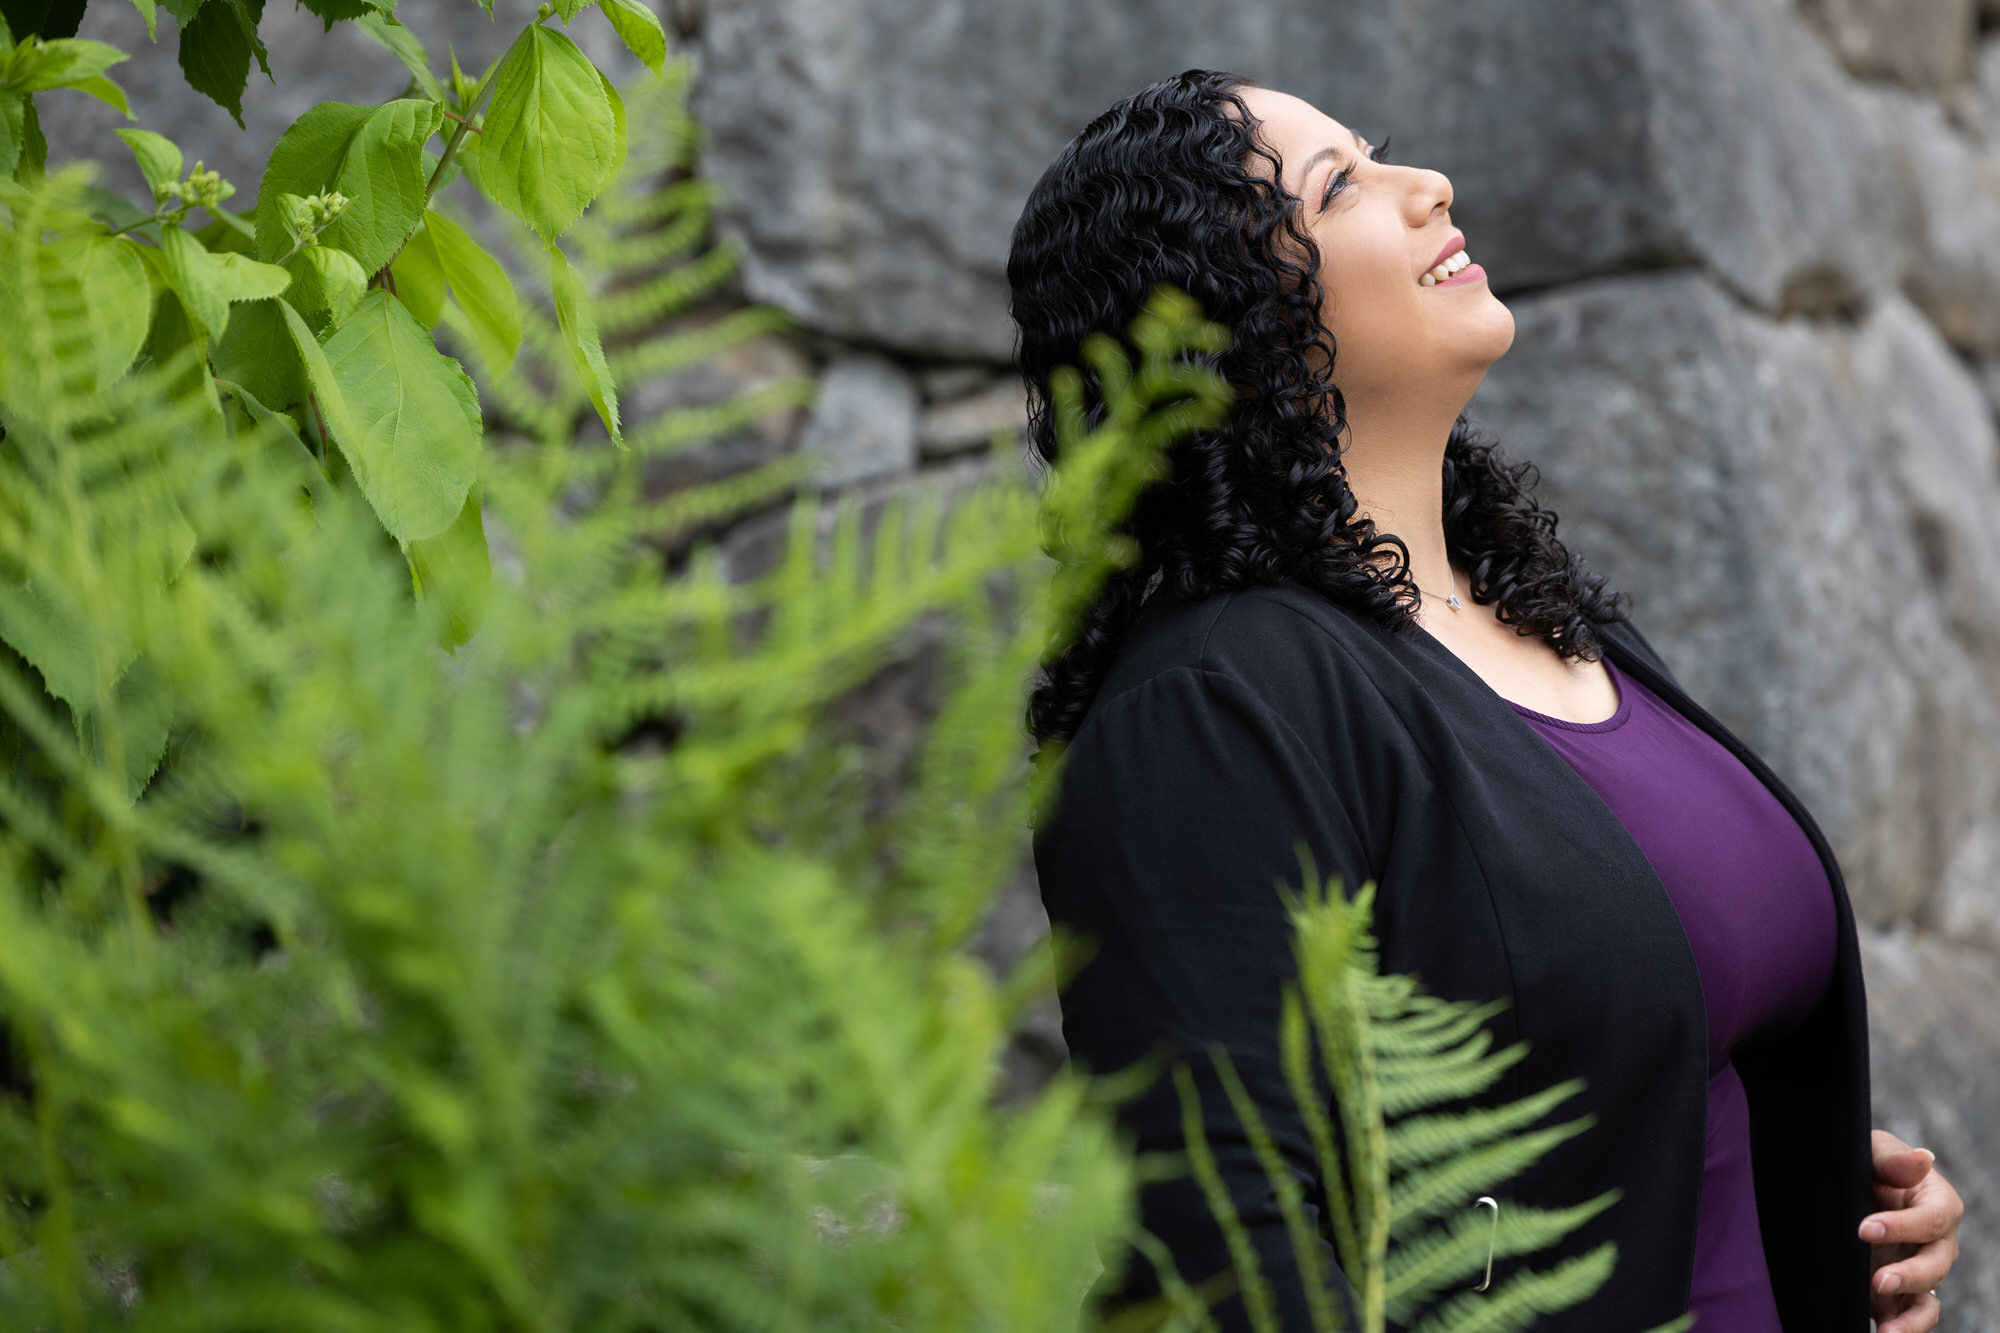 Un miembro de Empowered Voices que viste una blusa de color púrpura real y un cárdigan negro sonríe y mira hacia el cielo, apoyado contra una pared de piedra gris cerca de un follaje de helechos verdes.